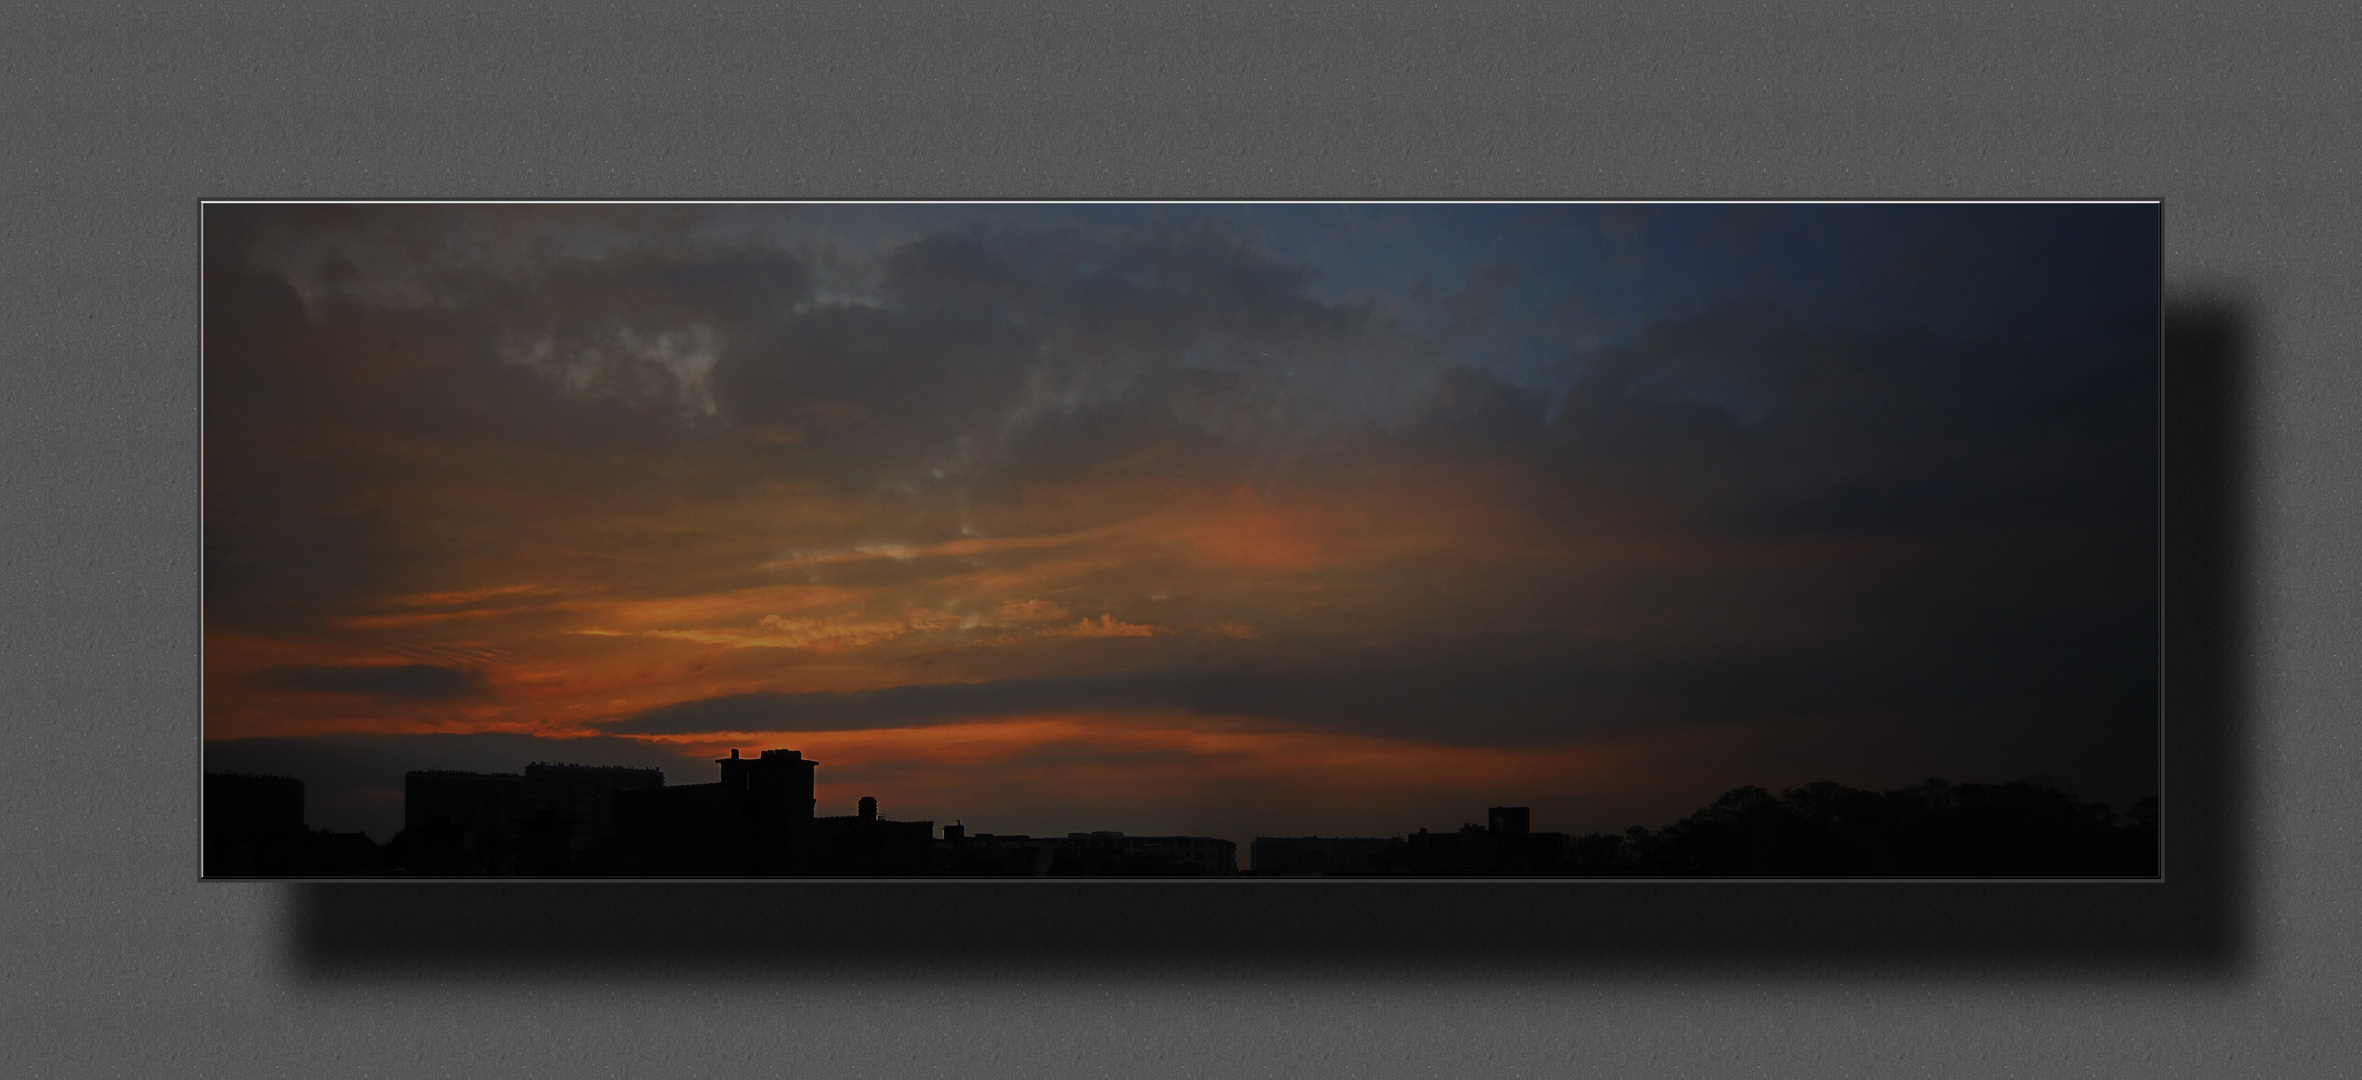 Noch ein Sonnenuntergang - gesehen aus meinem kleinen Atelier in Molenbeek/Brüssel